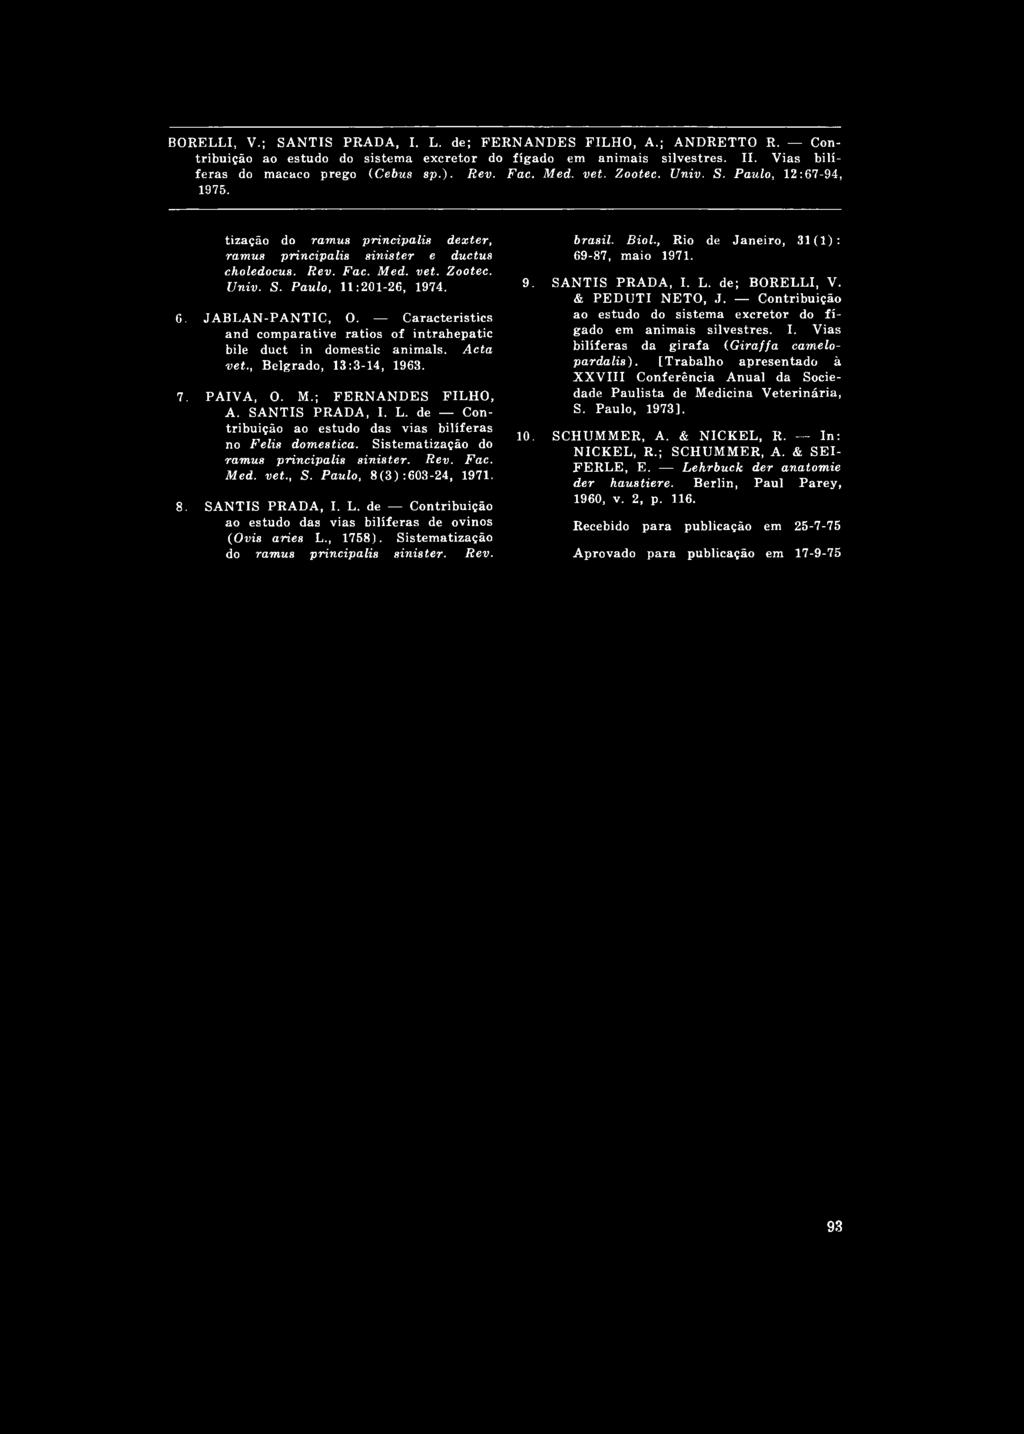 , Belgrado, 13:3-14, 1963. 7. PAIVA, O. M.; FERNANDES FILHO, A. SANTIS PRADA, I. L. de Contribuição ao estudo das vias bilíferas no Felis domestica. Sistematização do ramus principalis sinister. Rev.